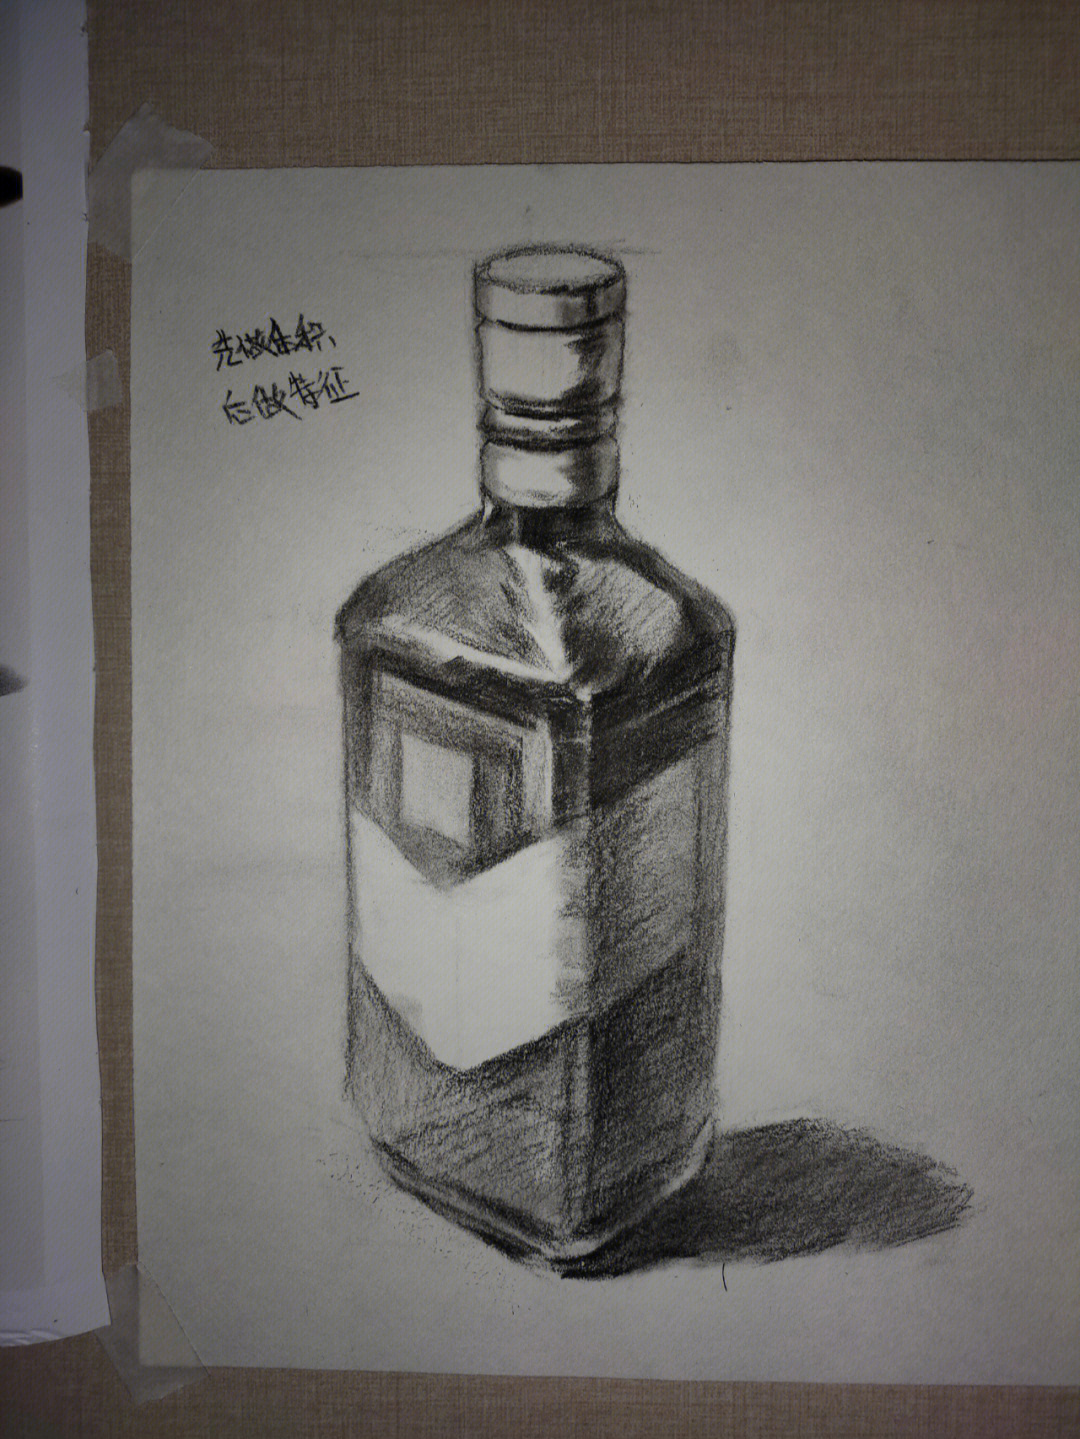 素描酒瓶结构图片